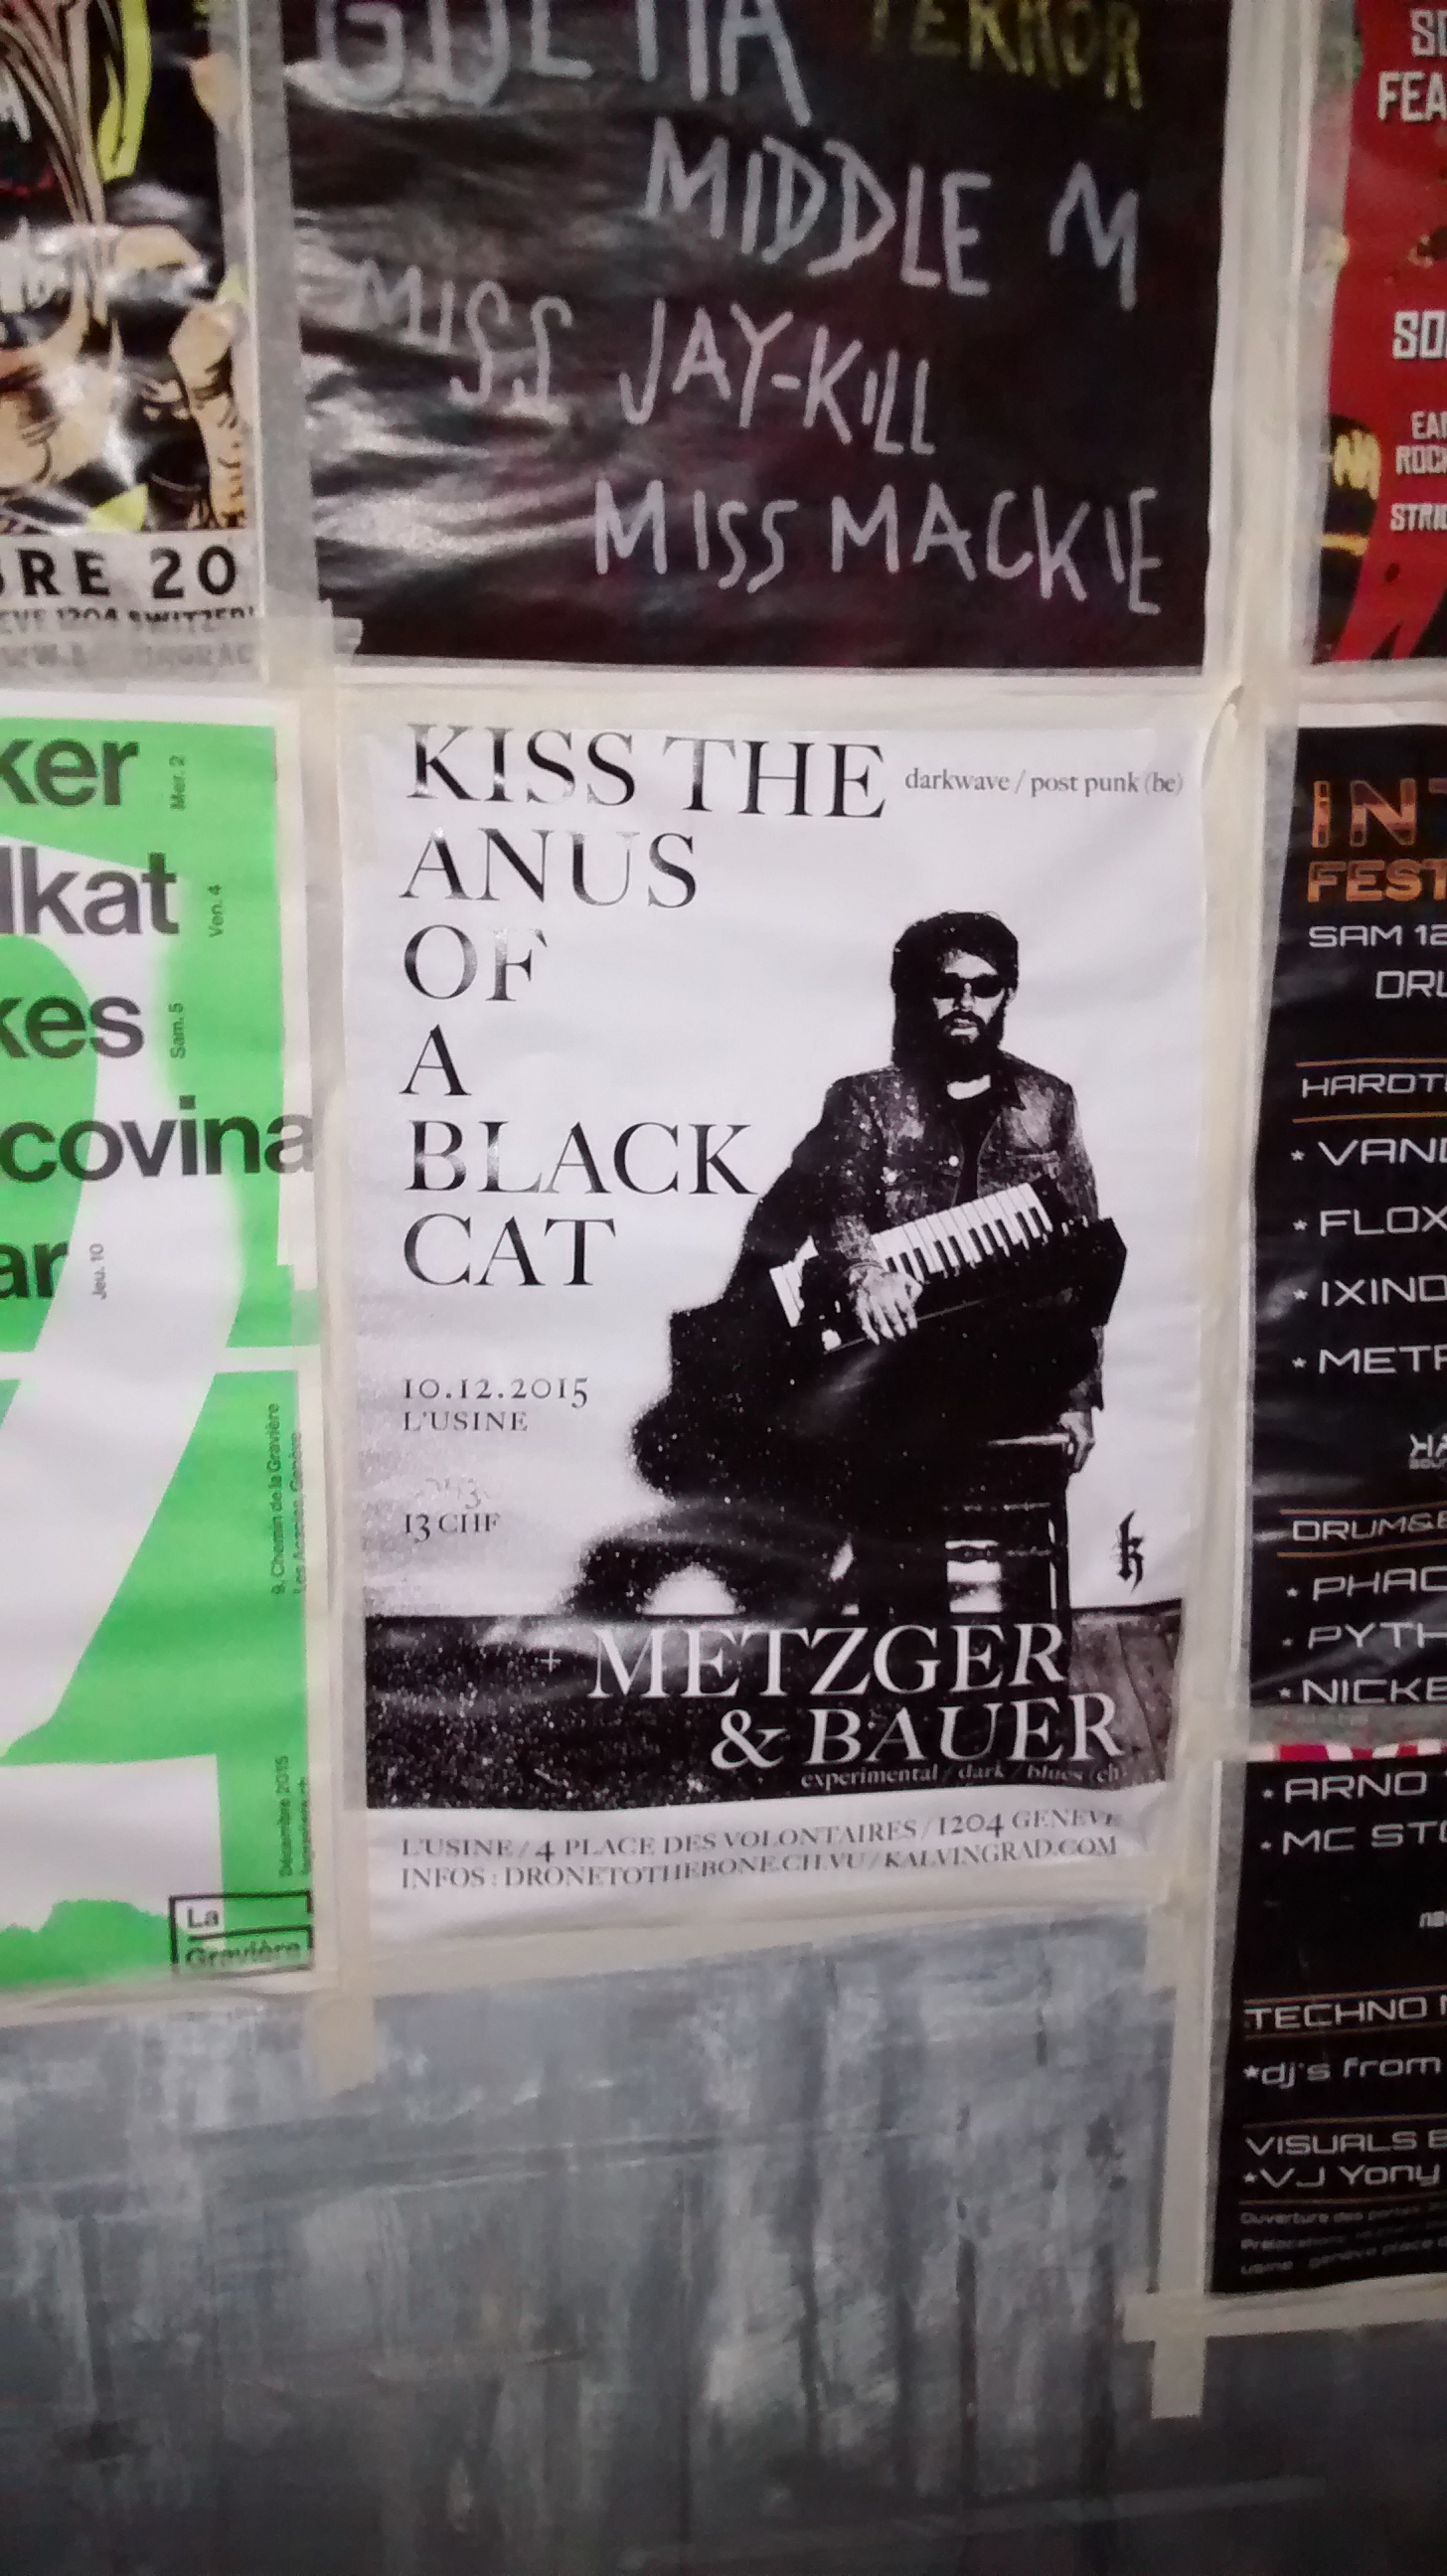 wtf poster - V Unltia Era Una Middlem Use JayKill Miss Mackie Re 20 keri Kiss The Ikat Anus On kes covina Black Cat . Vrni Metzger & Bauer Arnd Mc Gti